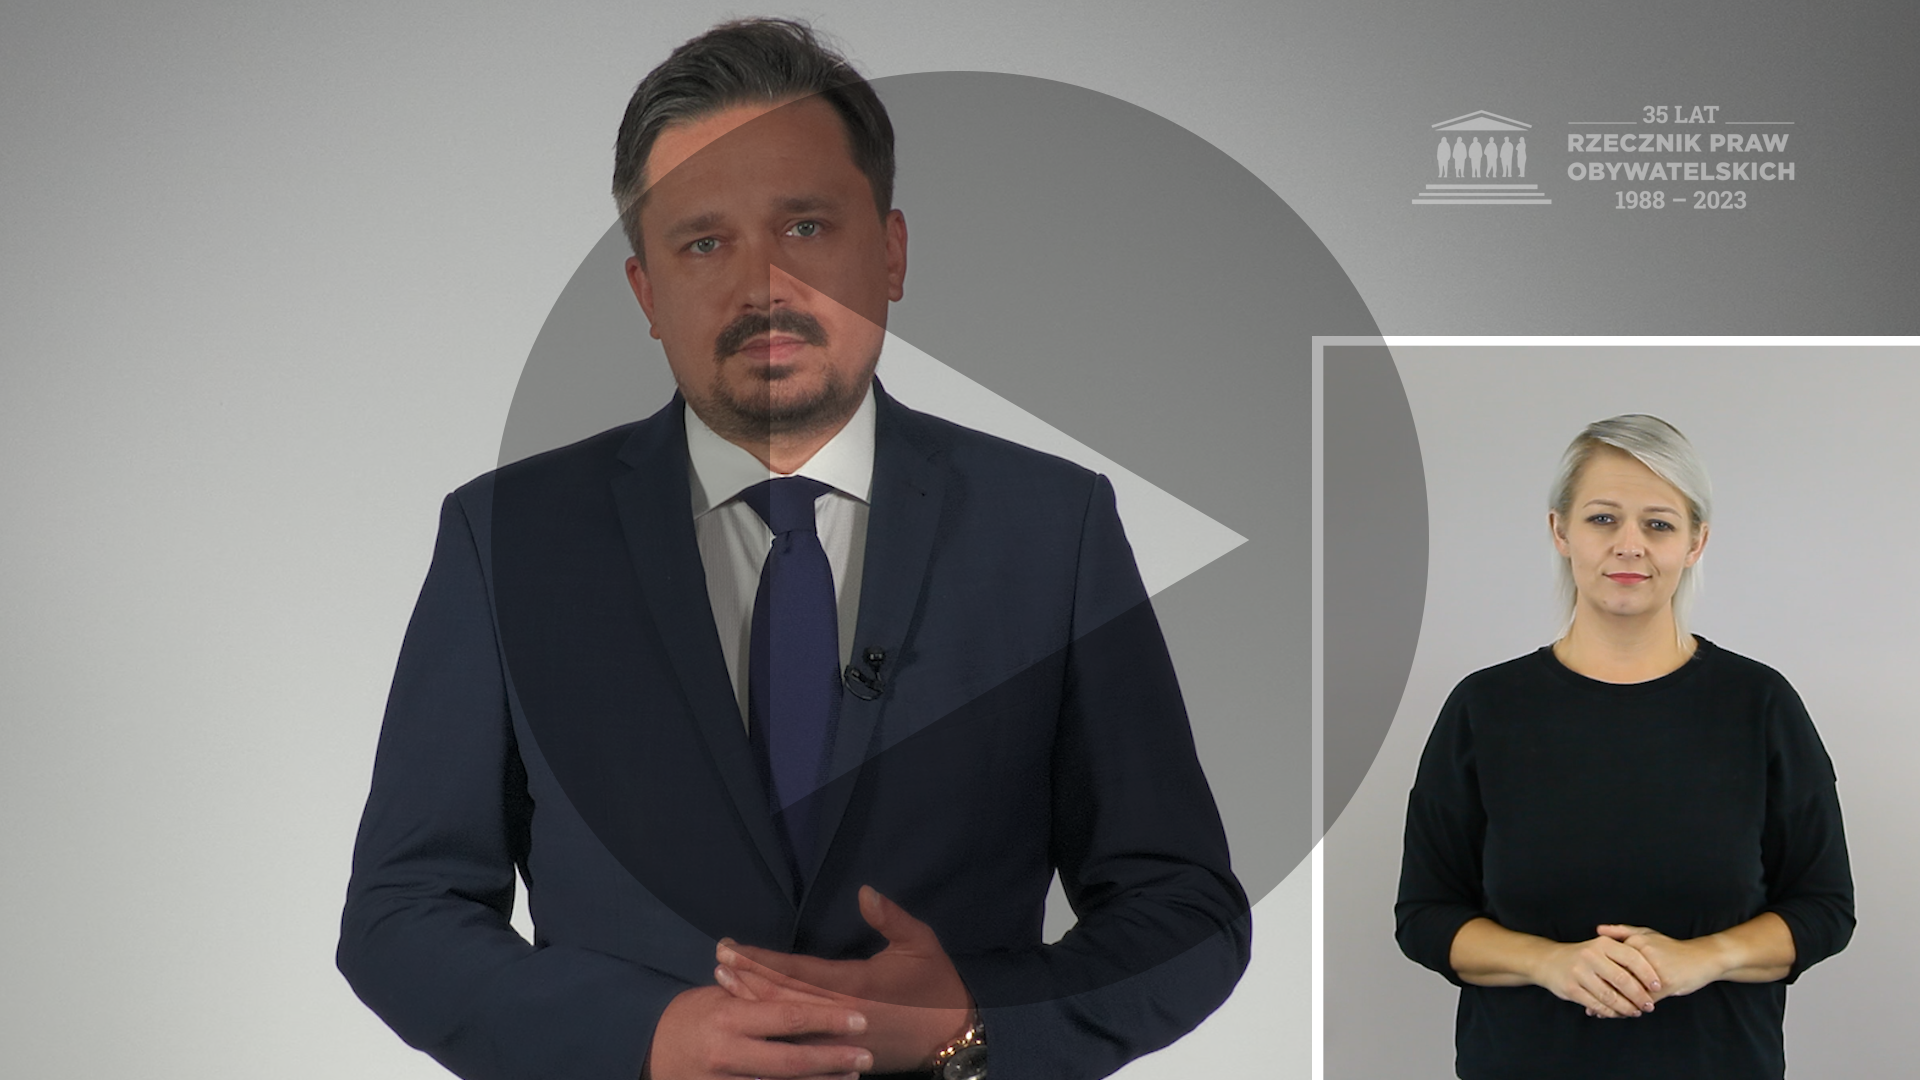 Kadr z nagrania przedstawiający RPO Marcina Wiącka i osobę migającą Polskim Językiem Migowym z naniesionym symbolem odtwarzania wideo - trójkątem w kole